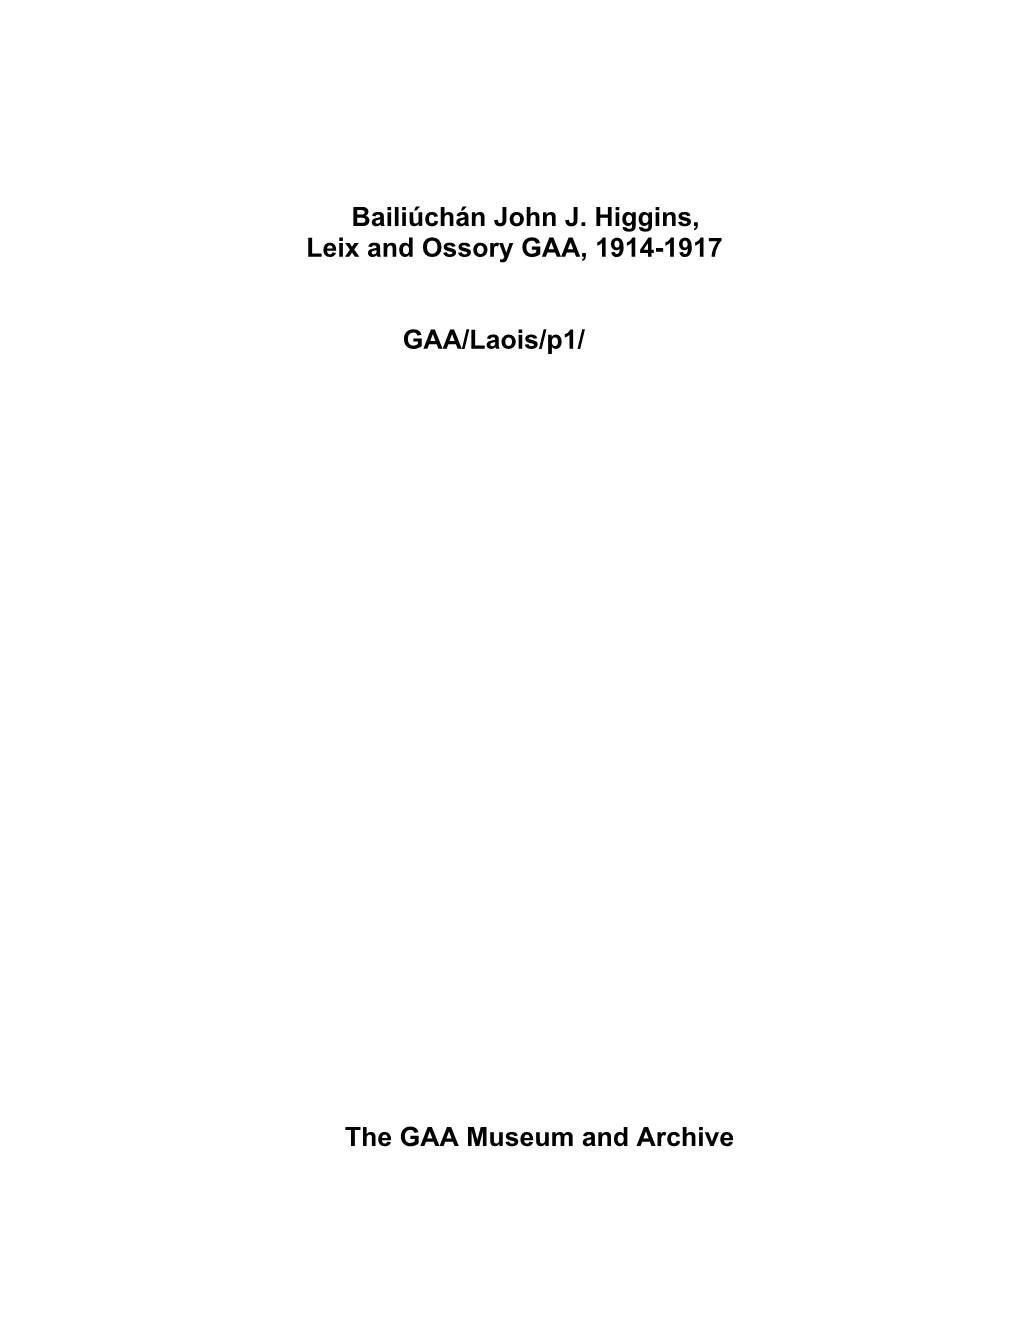 Bailiúchán John J. Higgins, Leix and Ossory GAA, 1914-1917 GAA/Laois